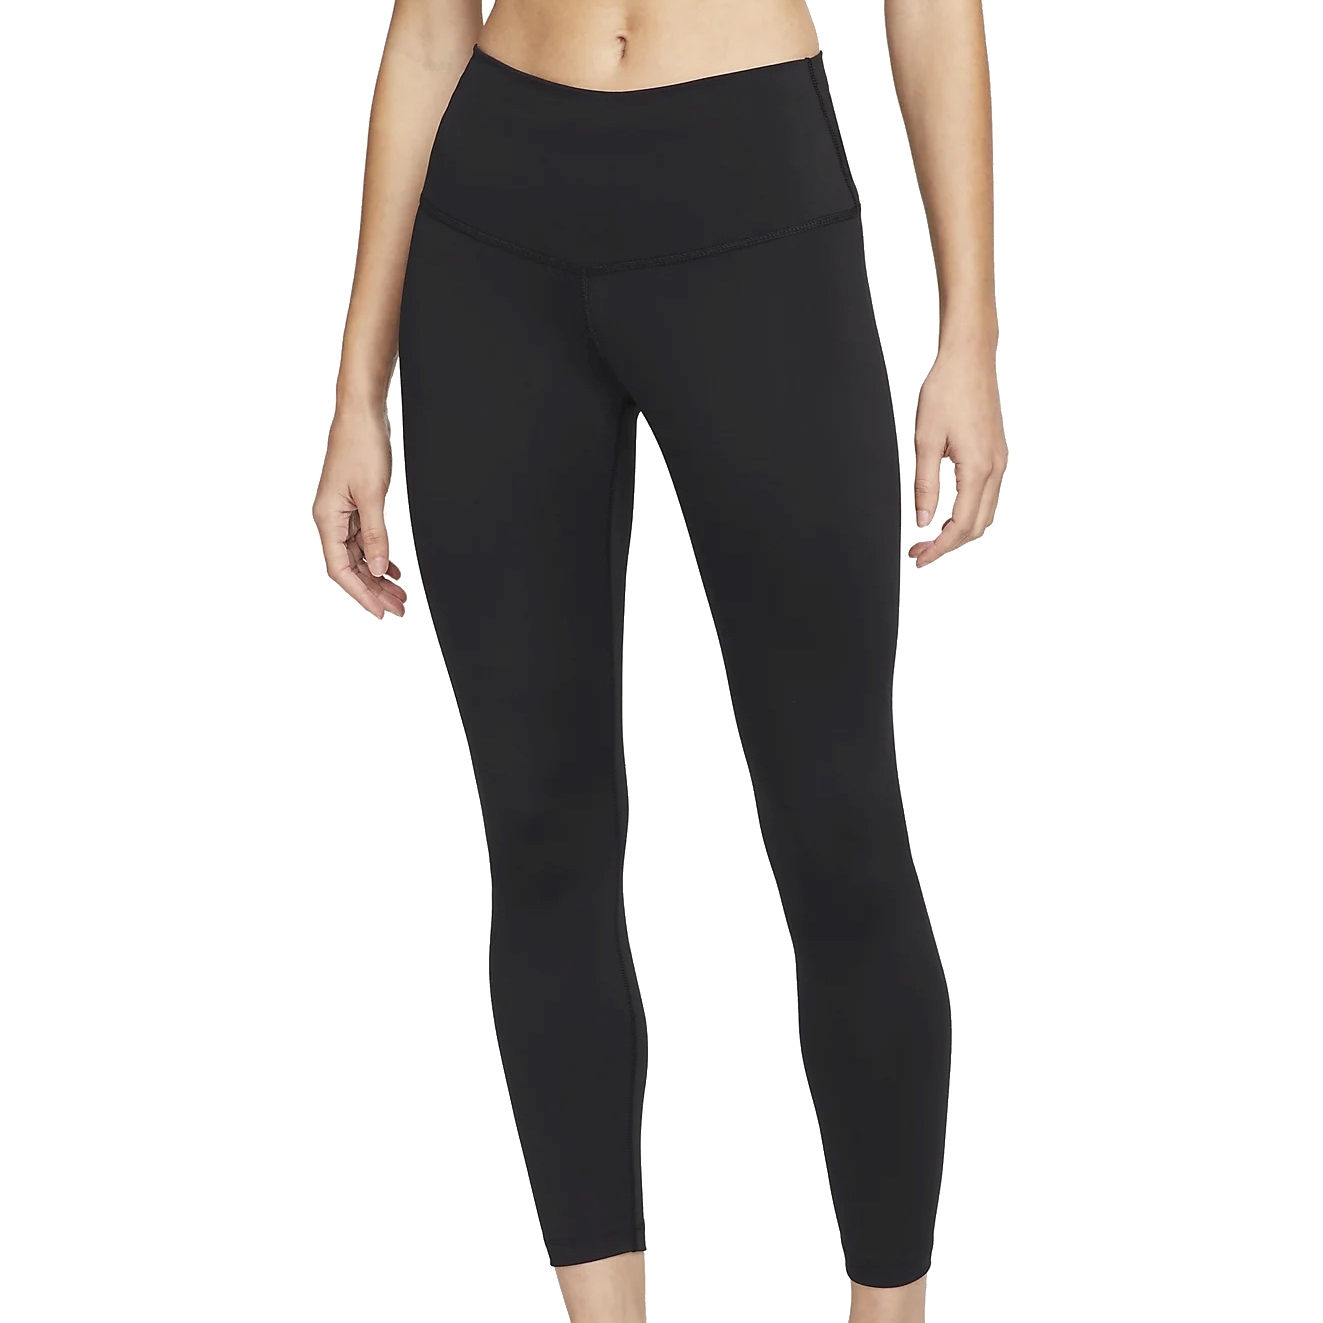 Produktbild von Nike Yoga Dri-FIT 7/8-Leggings mit hohem Bund für Damen - black/iron grey DM7023-010